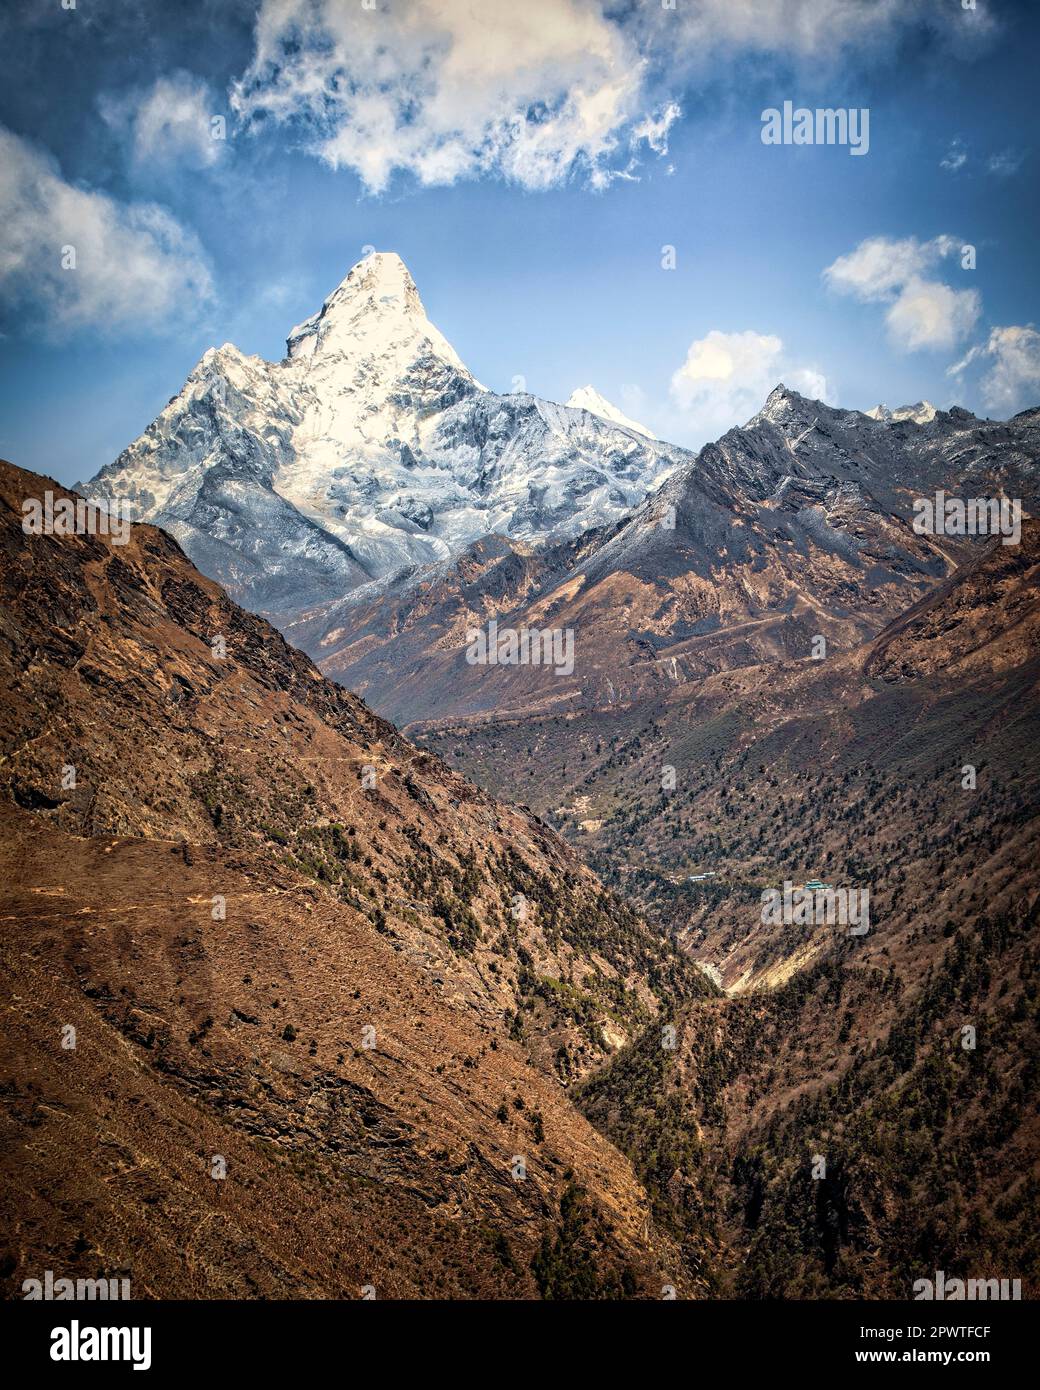 AMA Dablam kommt auf dem Weg zum Mt. Everest Bas Camp im Himalaya von Nepal. Stockfoto